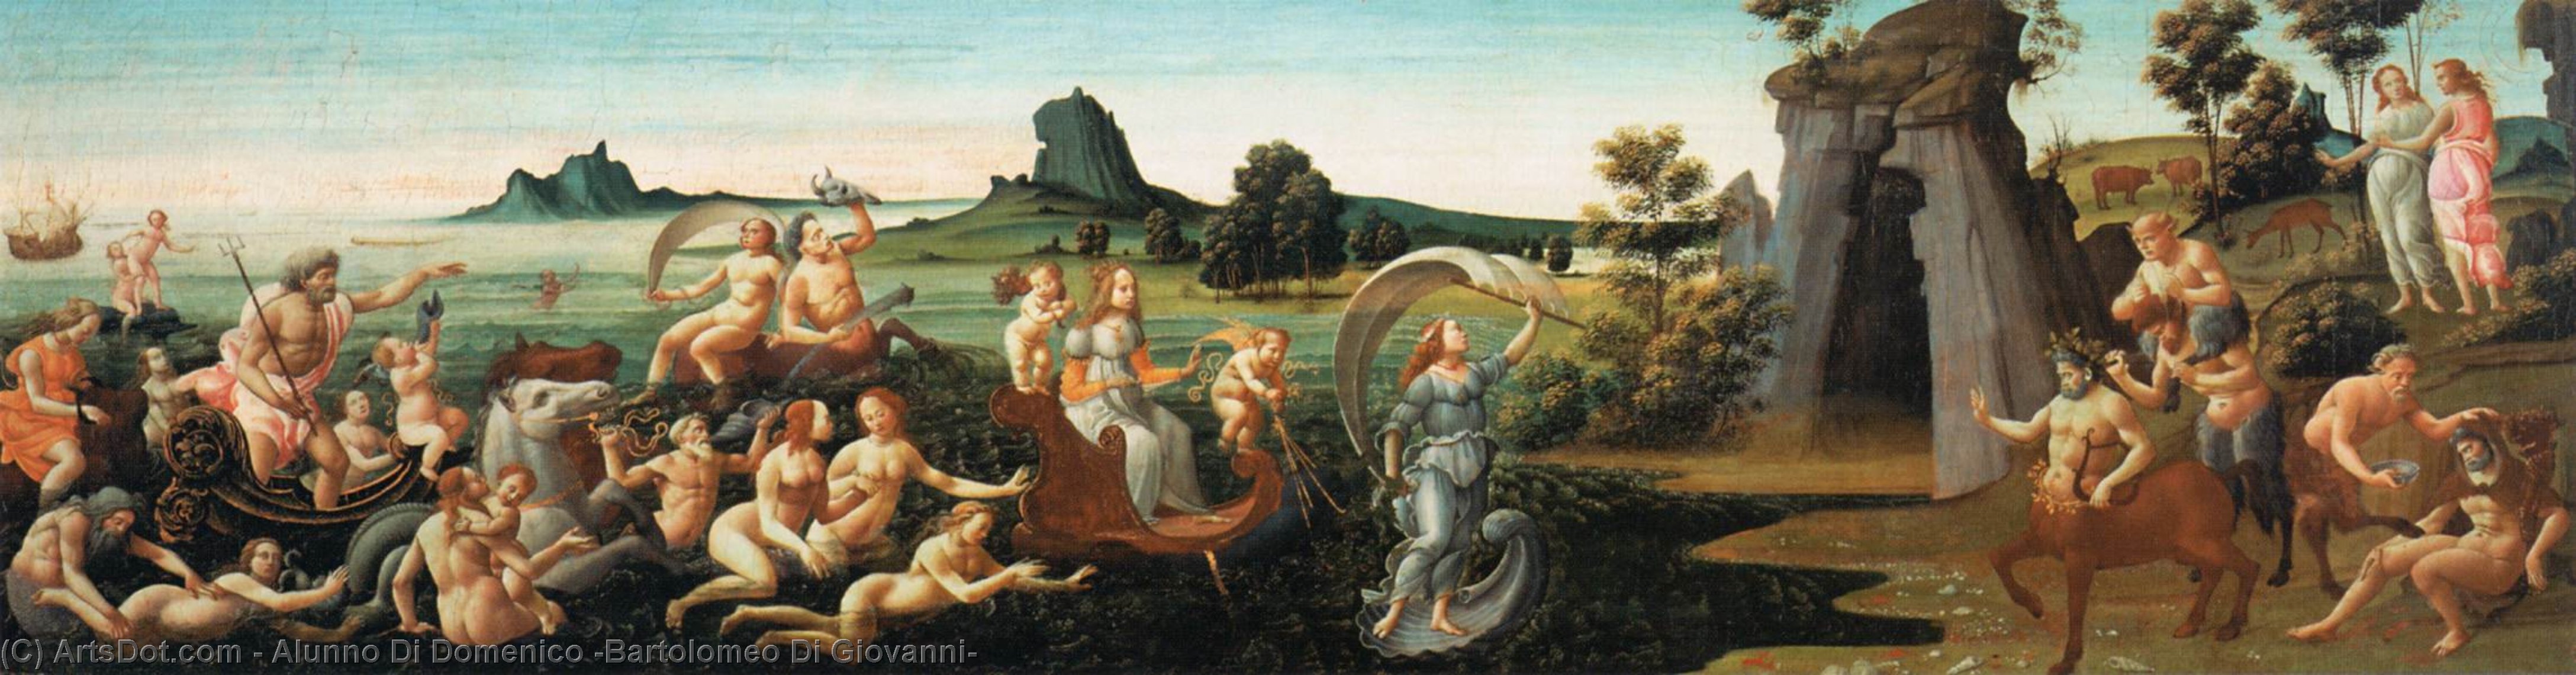 WikiOO.org - Encyclopedia of Fine Arts - Lukisan, Artwork Alunno Di Domenico (Bartolomeo Di Giovanni) - Procession of Thetis